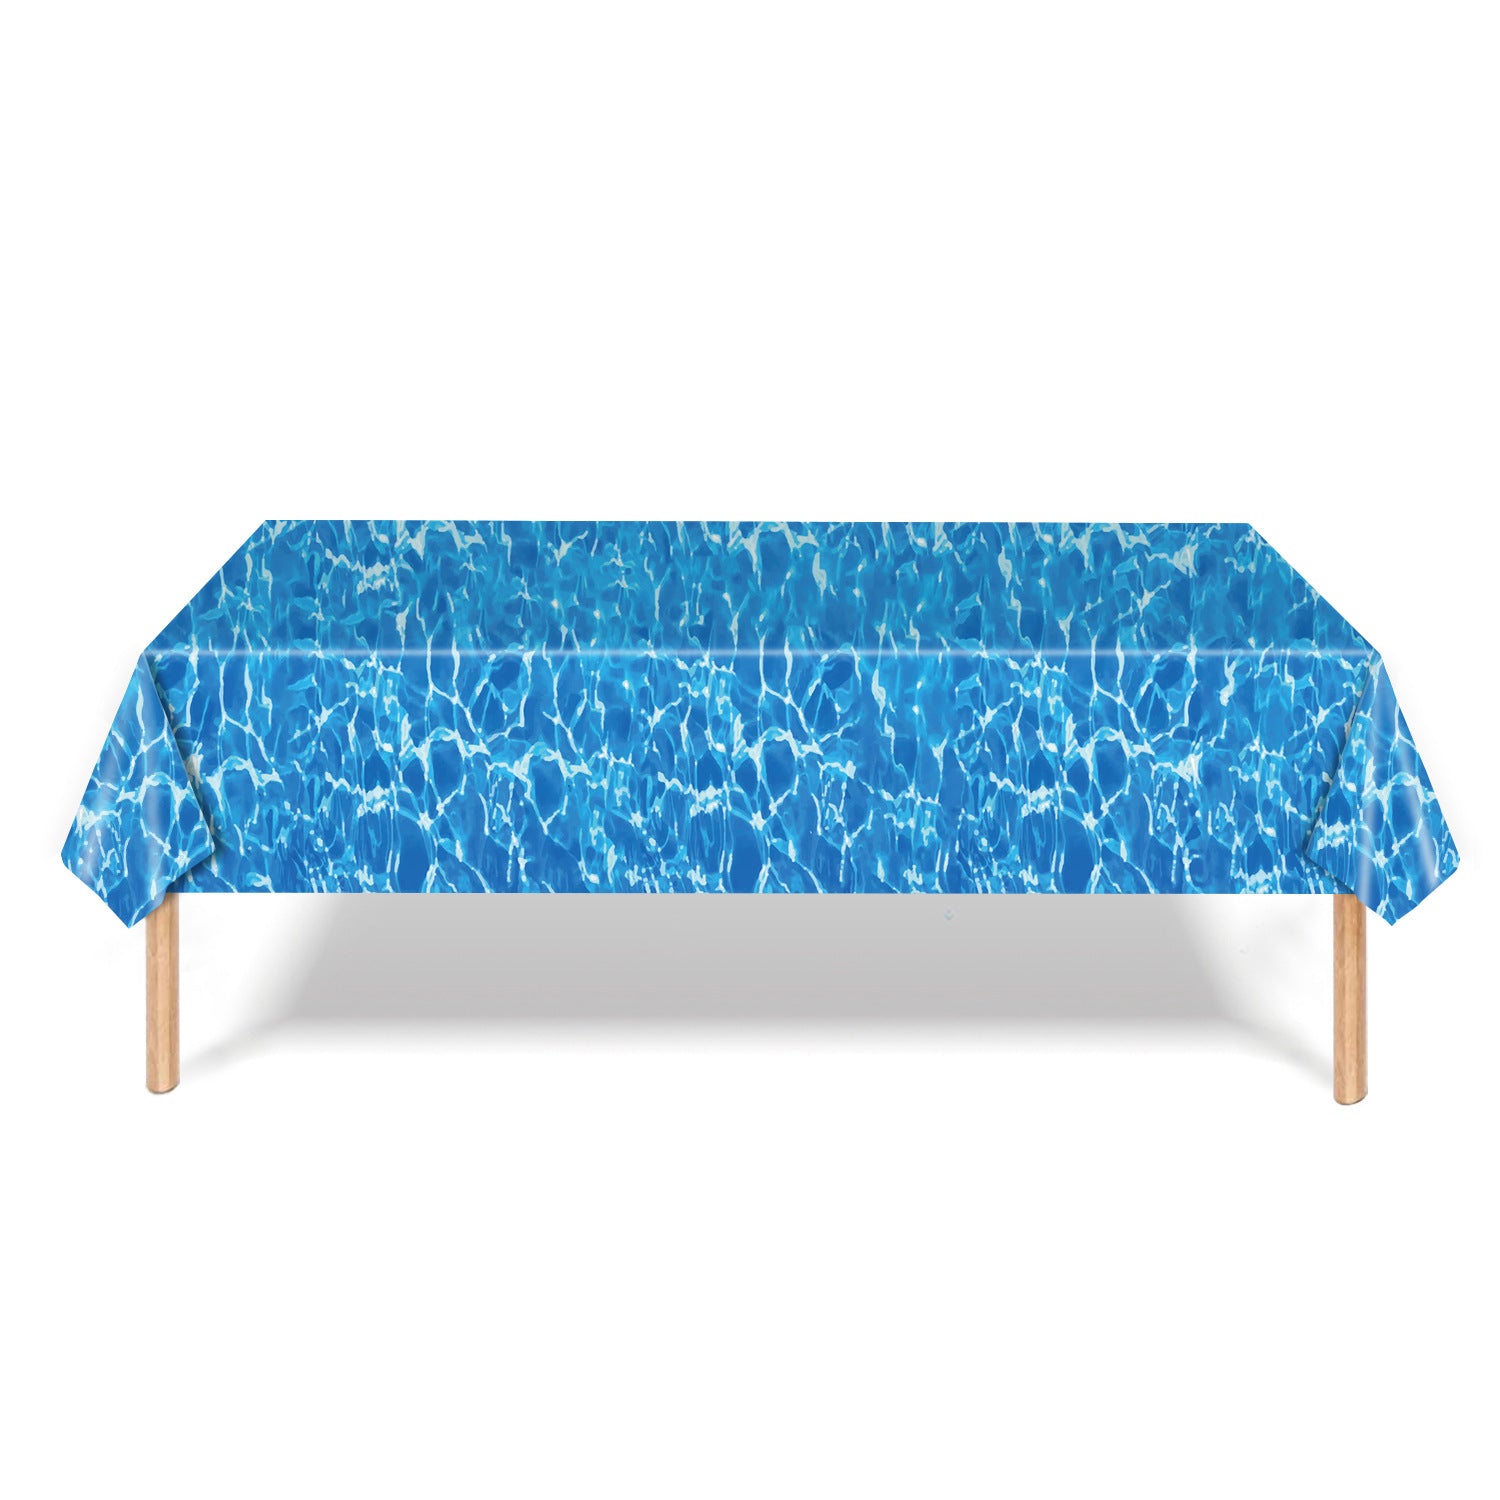 Mocsicka Ocean Wave Theme Print Tablecloths 137×274cm-Mocsicka Party